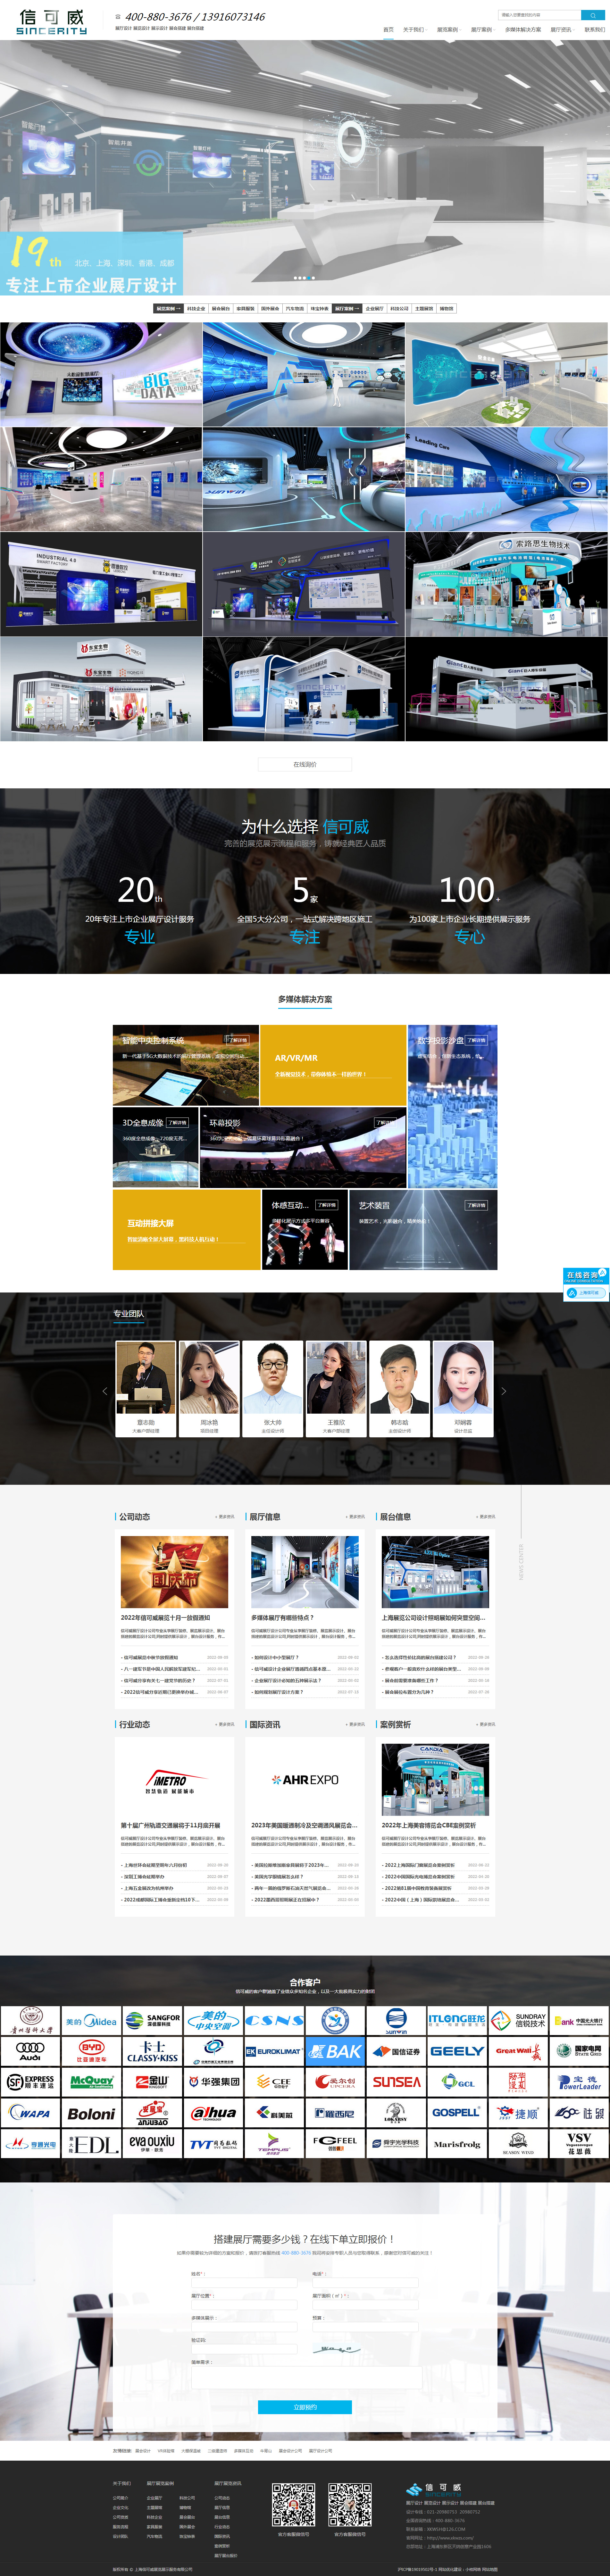 深圳信可威空间规划设计网站制作首页设计效果图